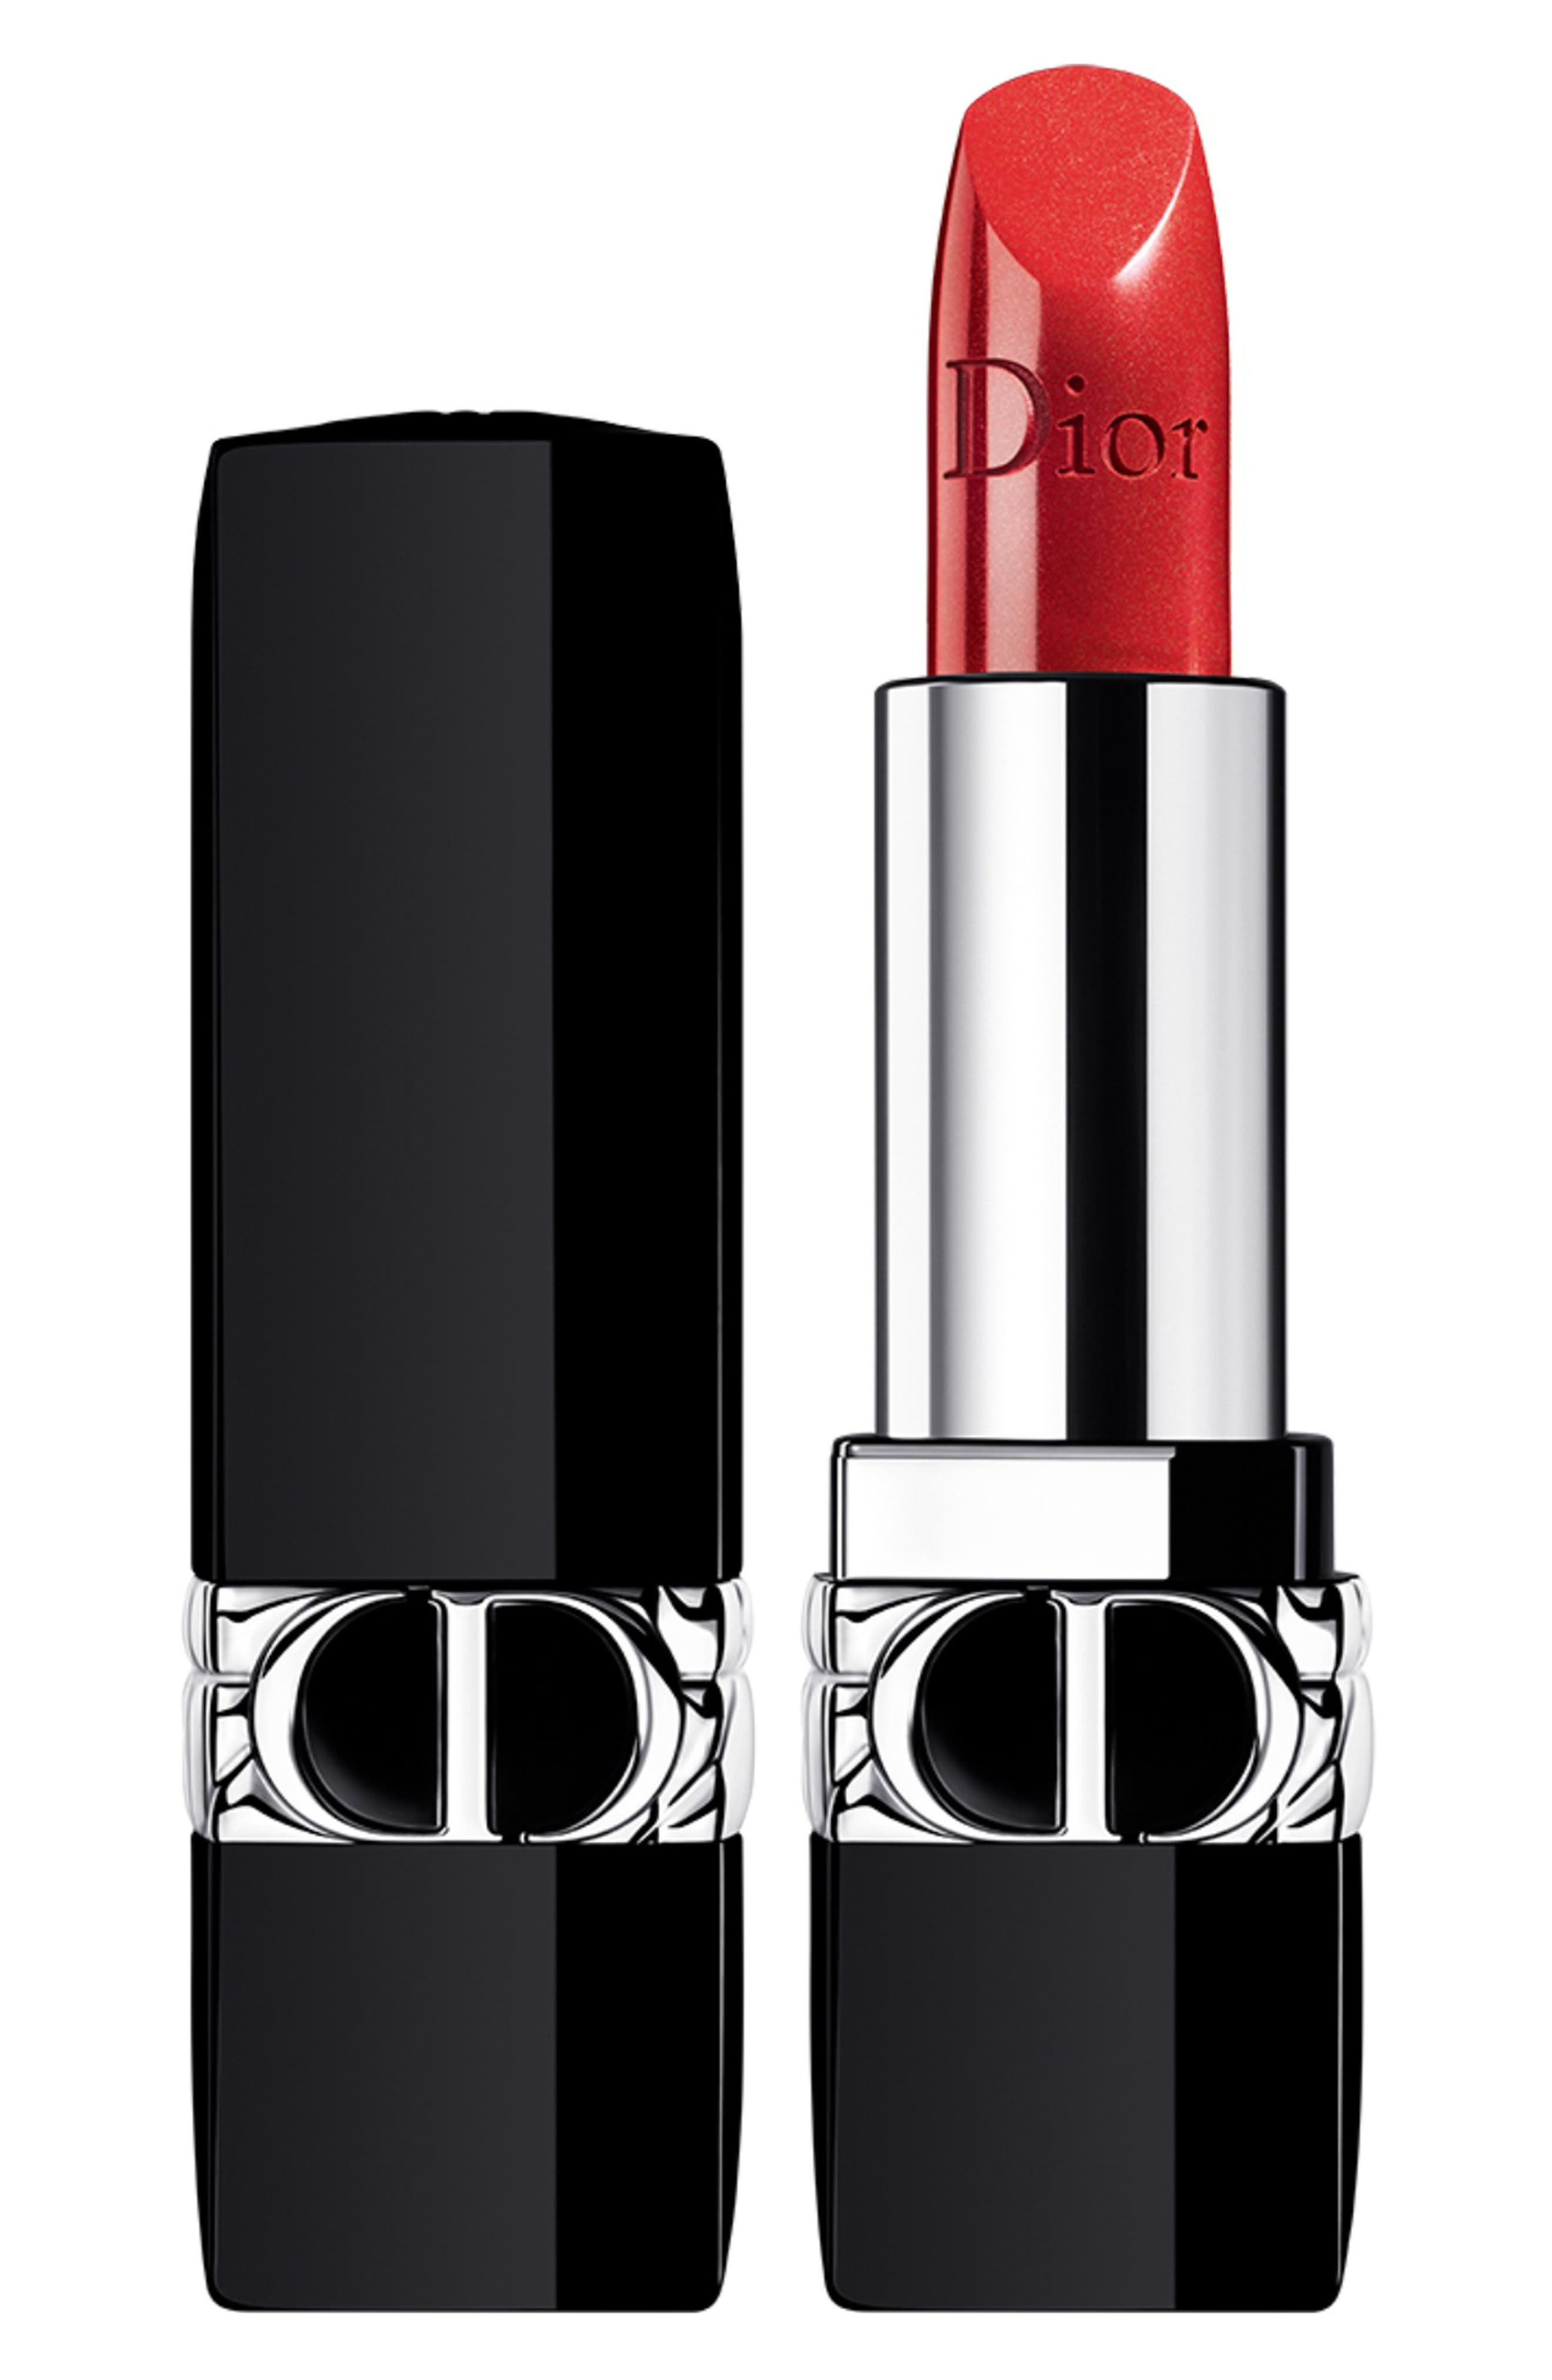 price of dior lipstick